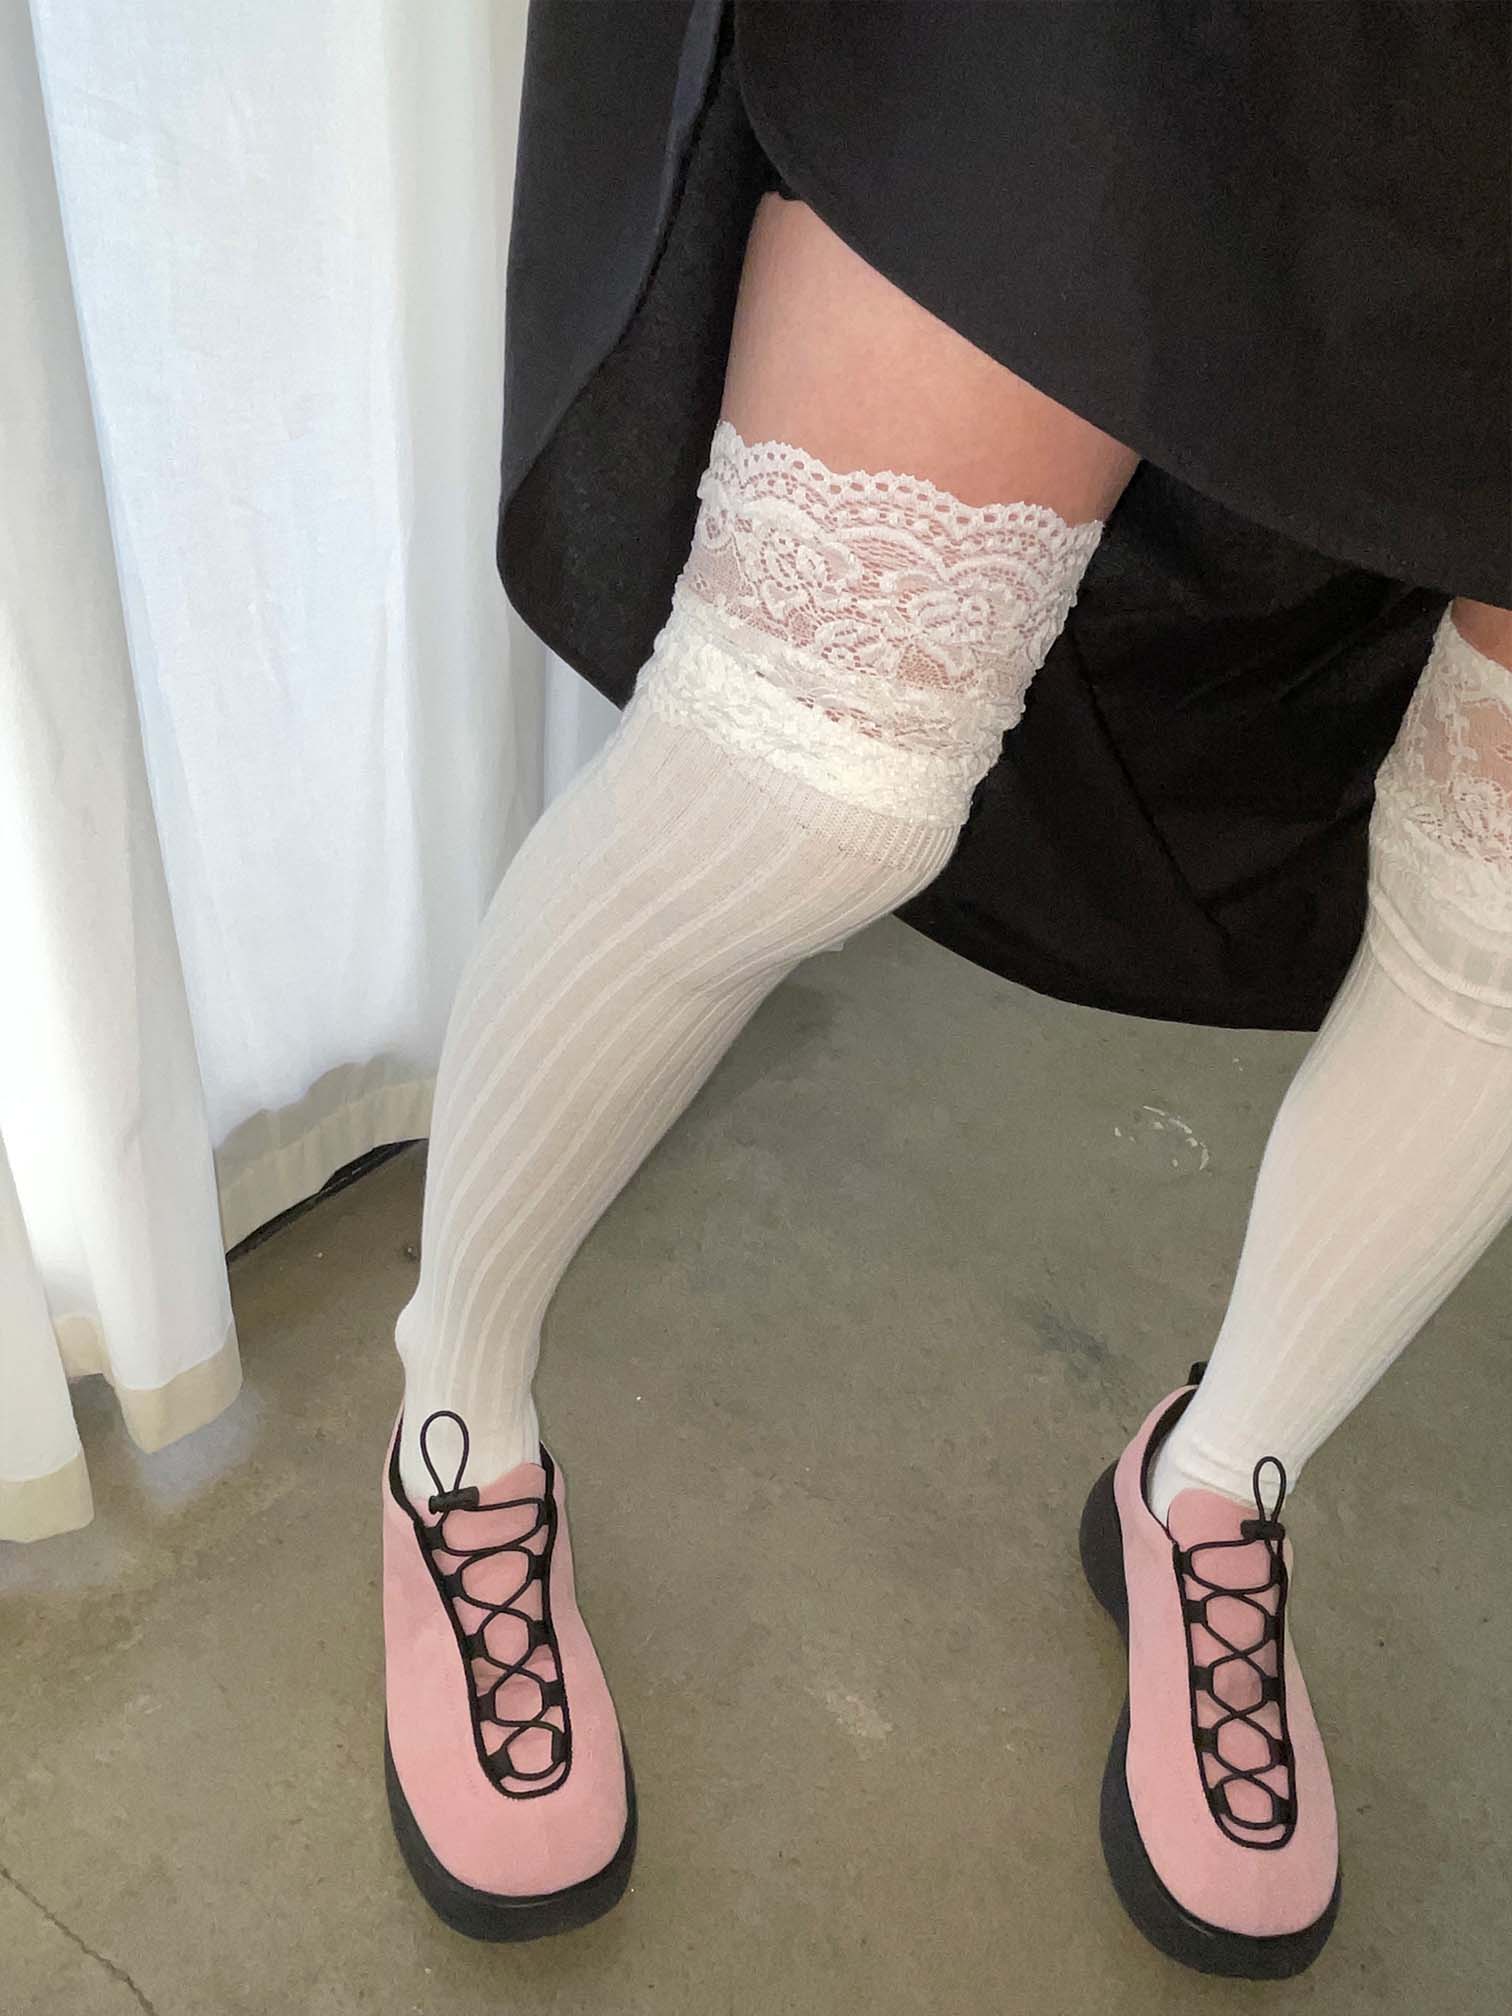 floret lace long socks